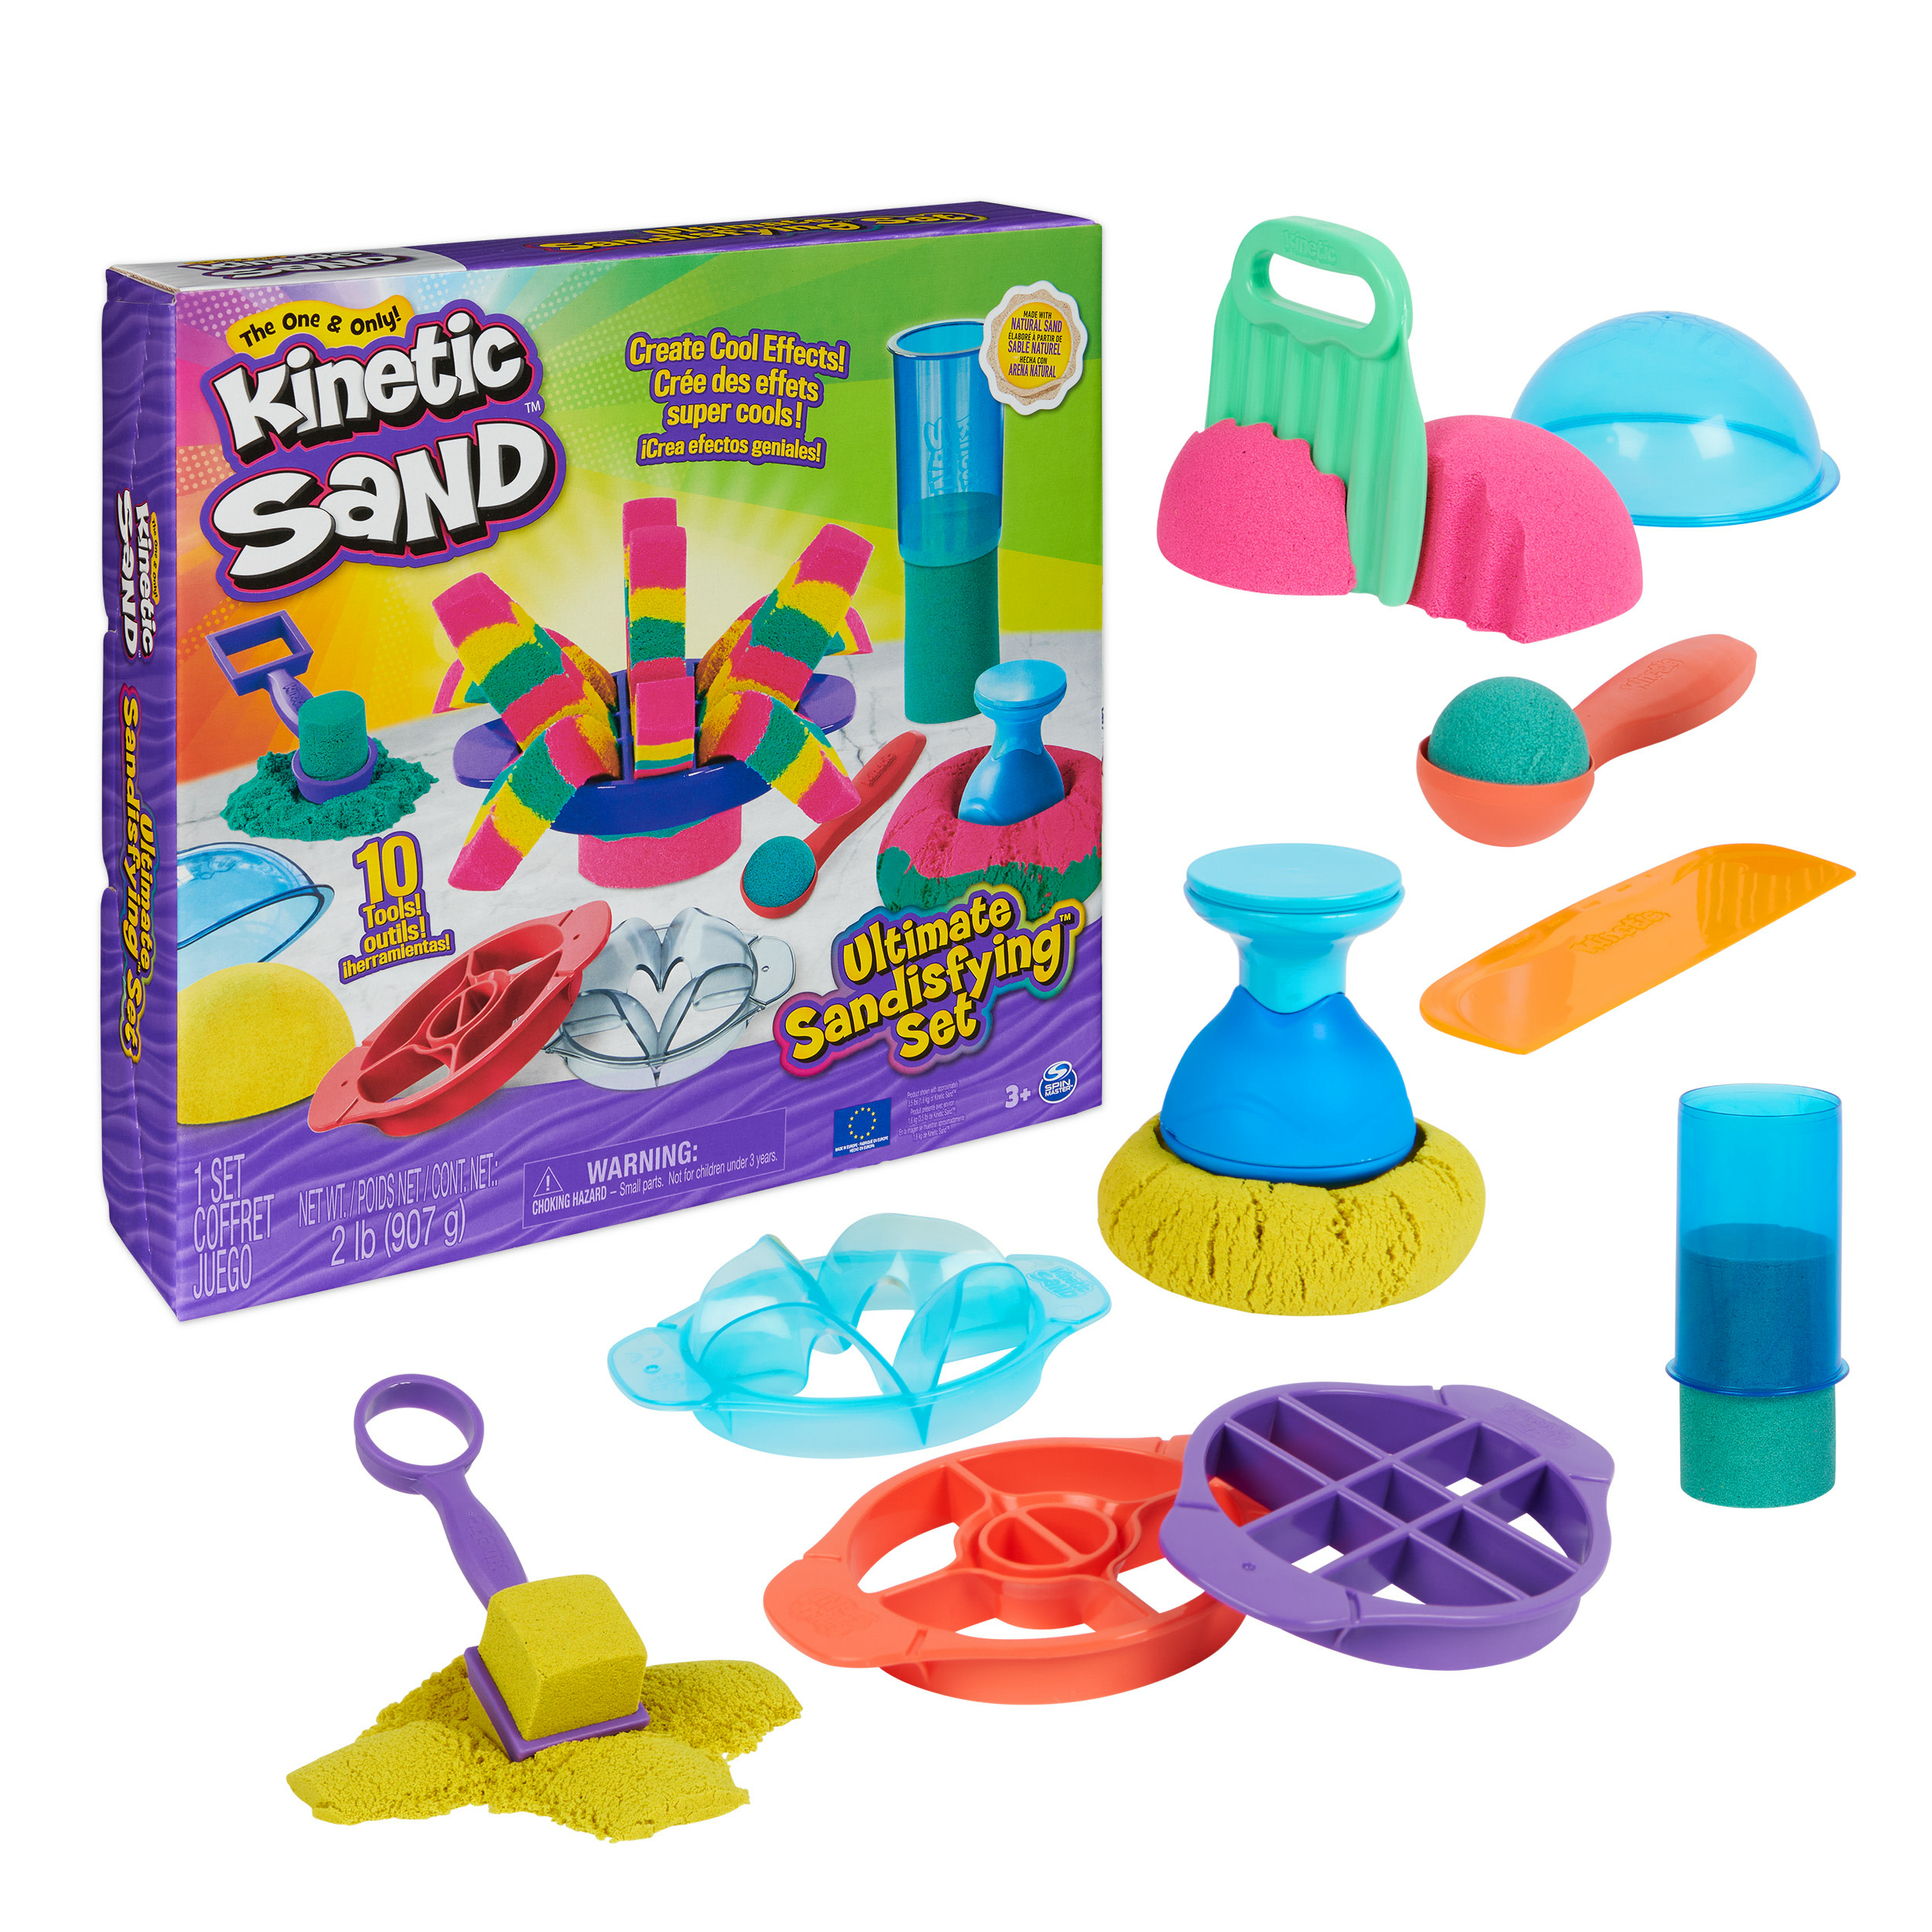 Spin Master Kinetic Sand - Ultimate Sandisfying-set met 907 g roze geel en blauwgroen speelzand - met 10 vormen en gereedschappen - Sensorisch speelgoed